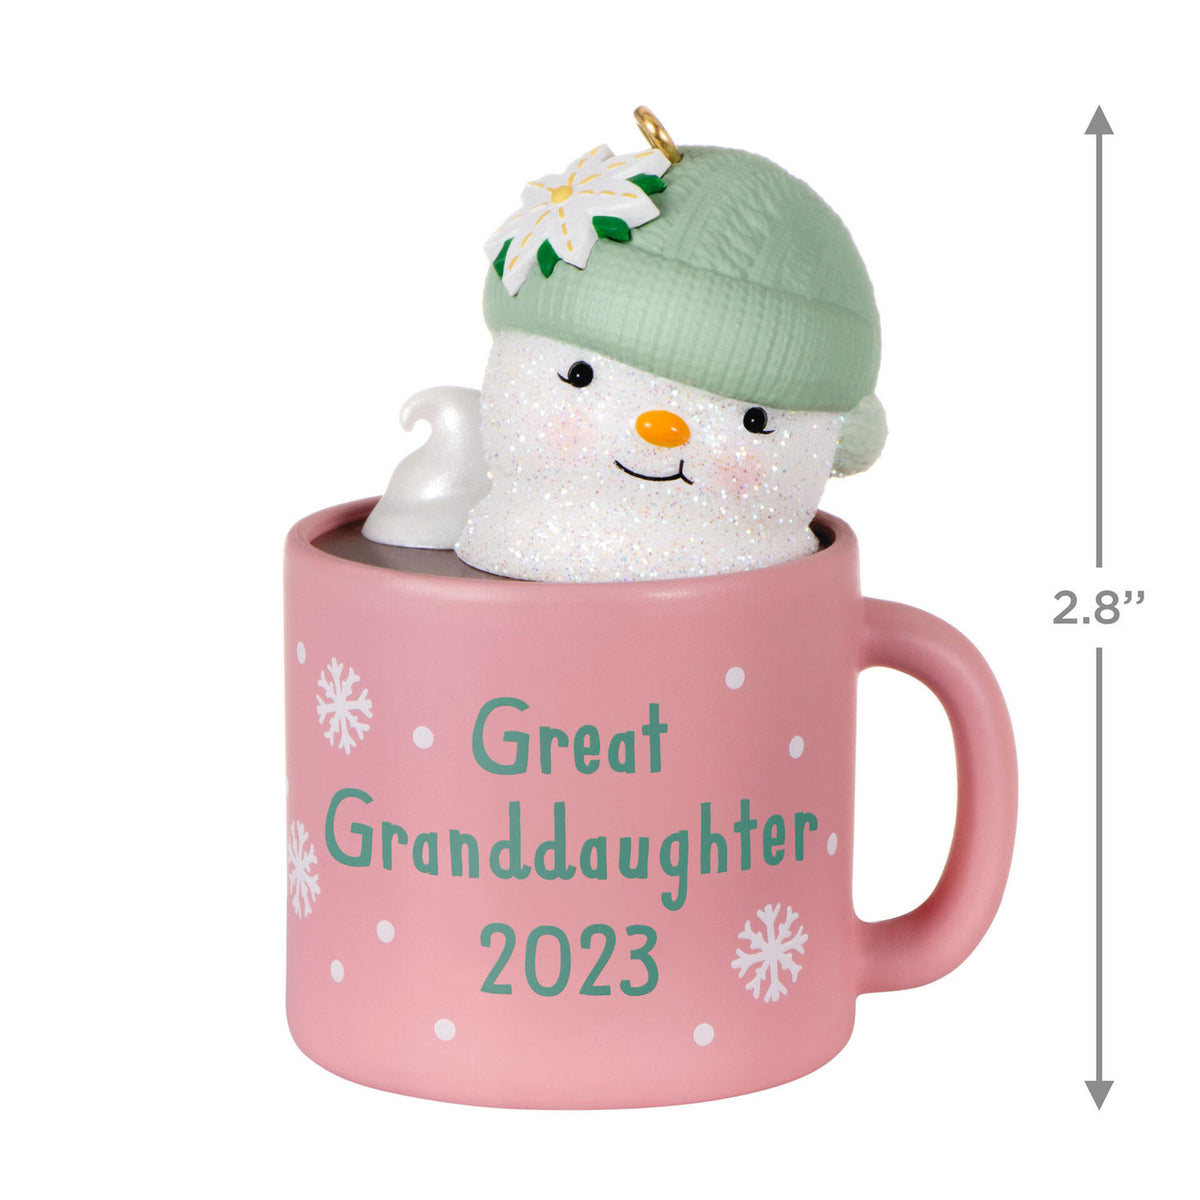 GreatGranddaughter Hot Cocoa Mug 2023 Ornament Available July 15, 202